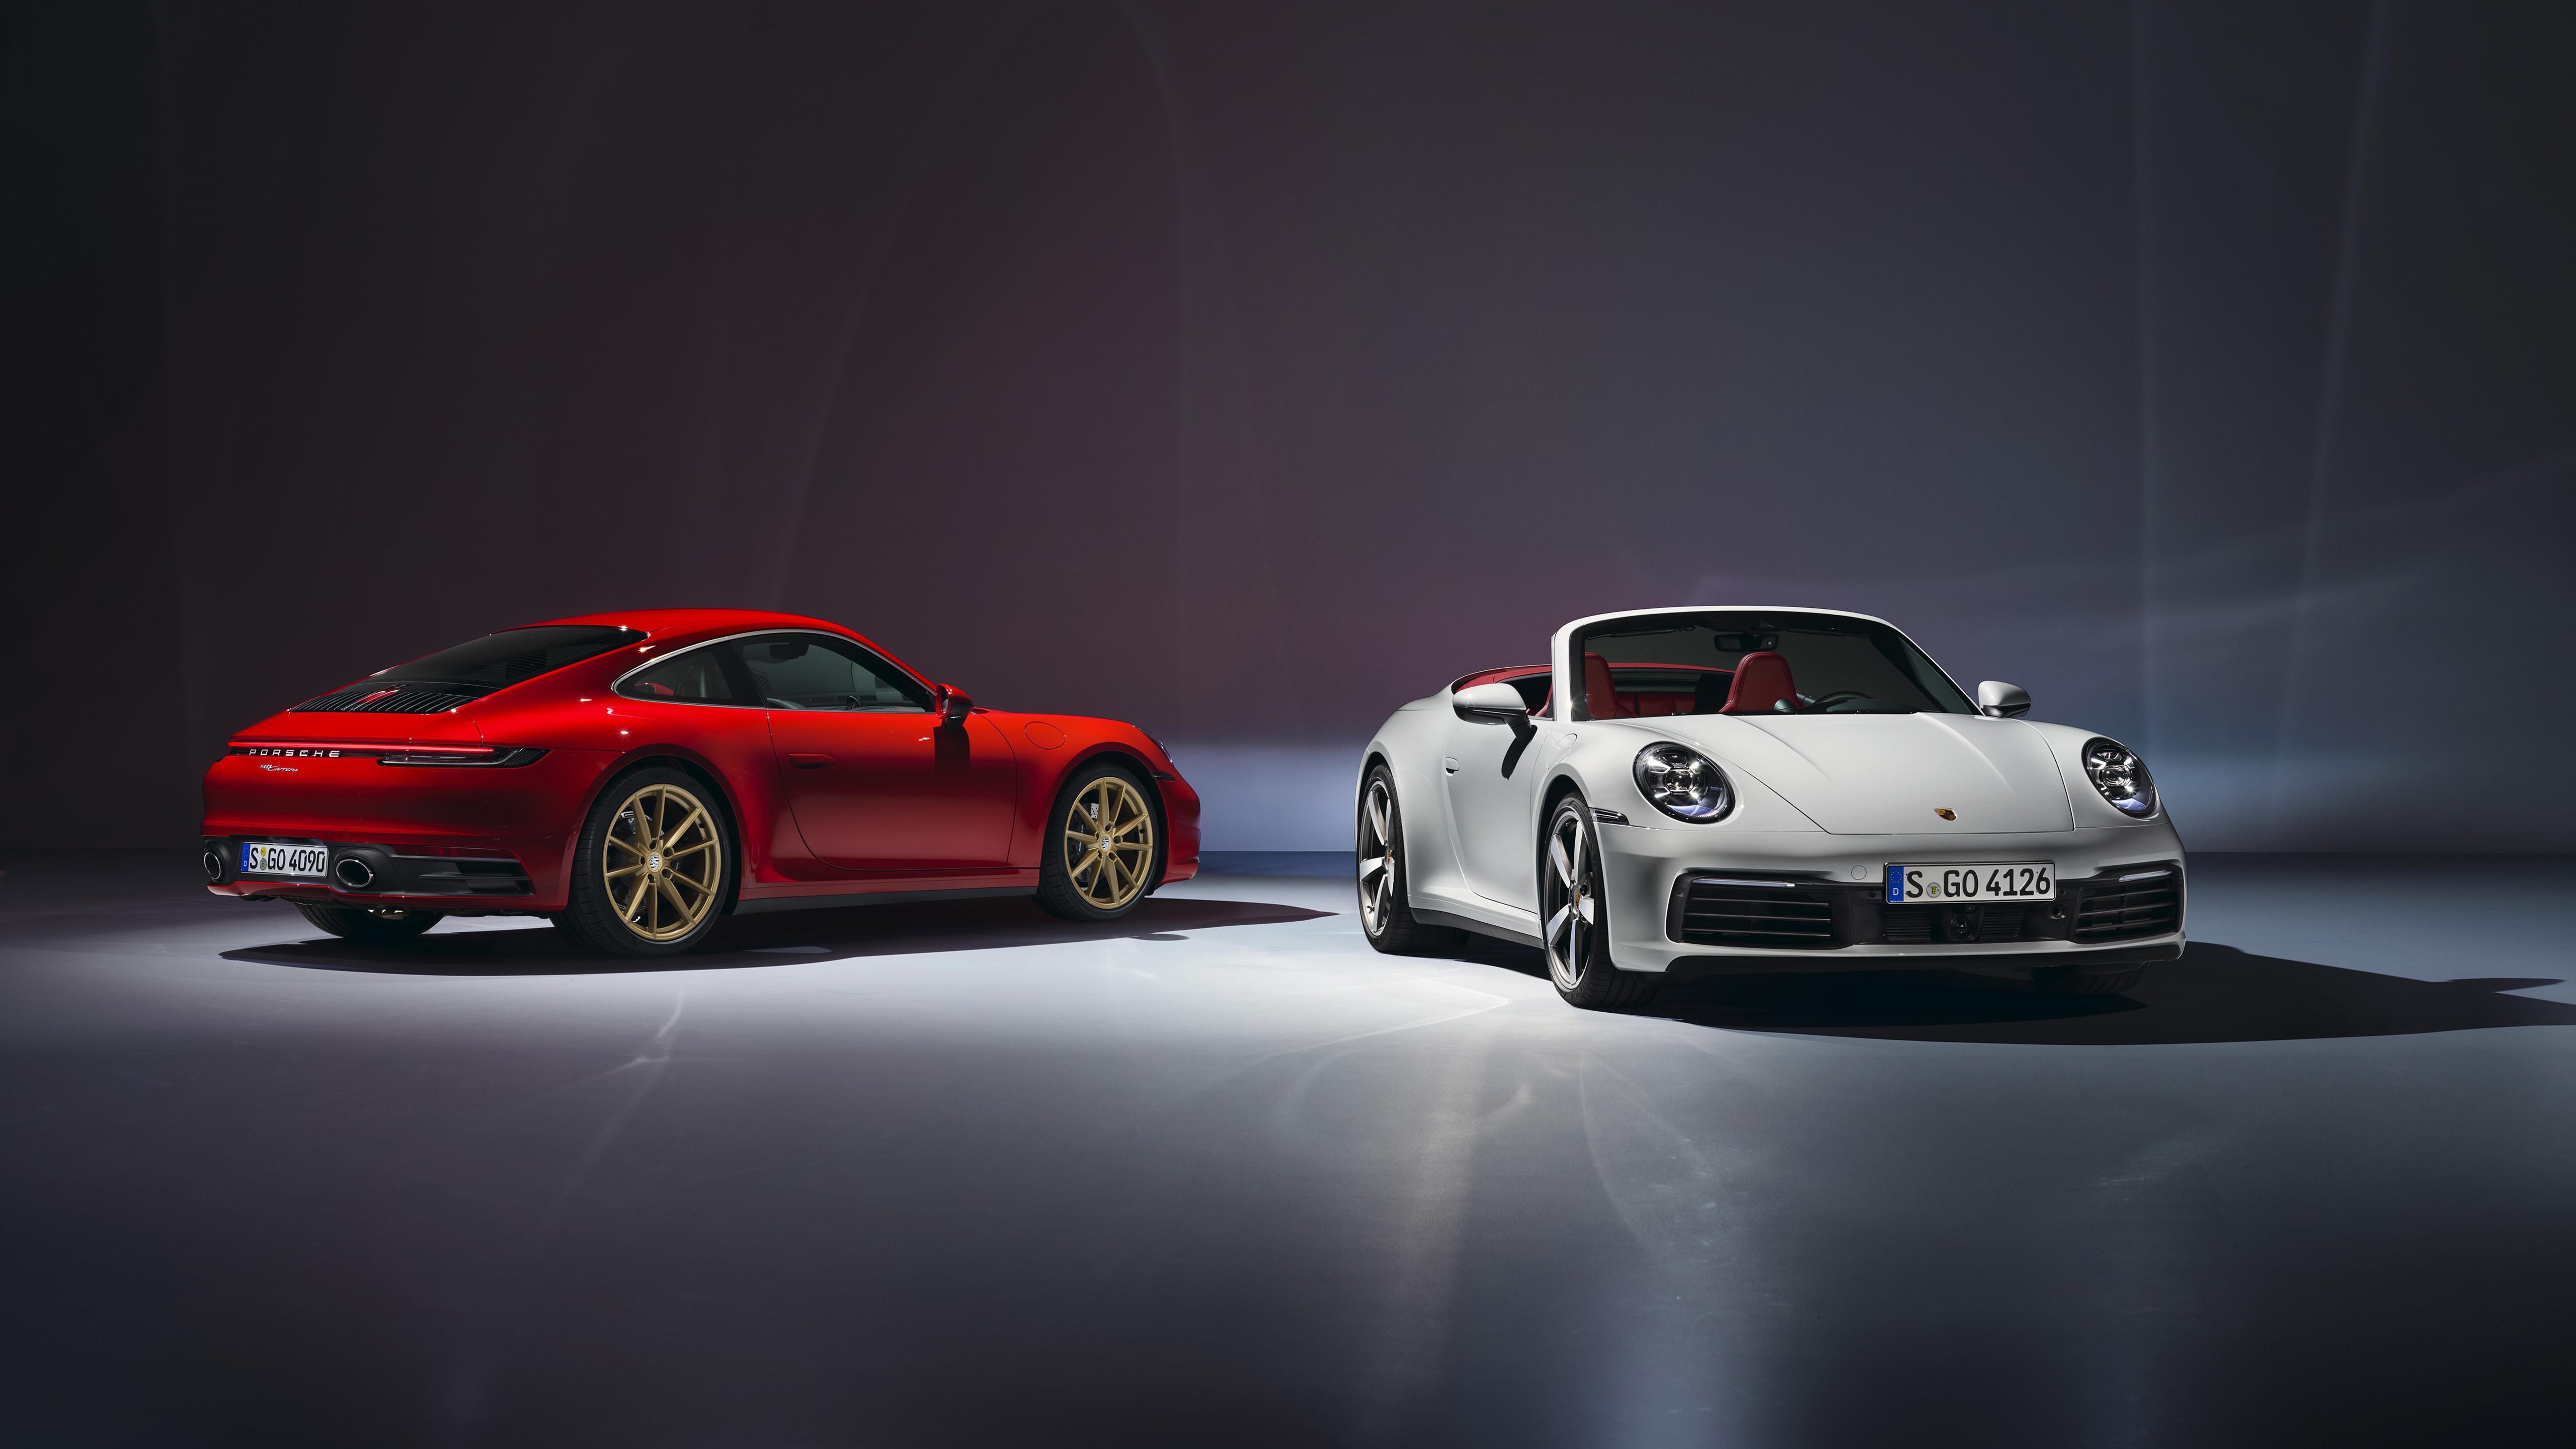 5120 x 2880 · jpeg - Porsche 911 2019 5K Wallpaper | HD Car Wallpapers | ID #12984